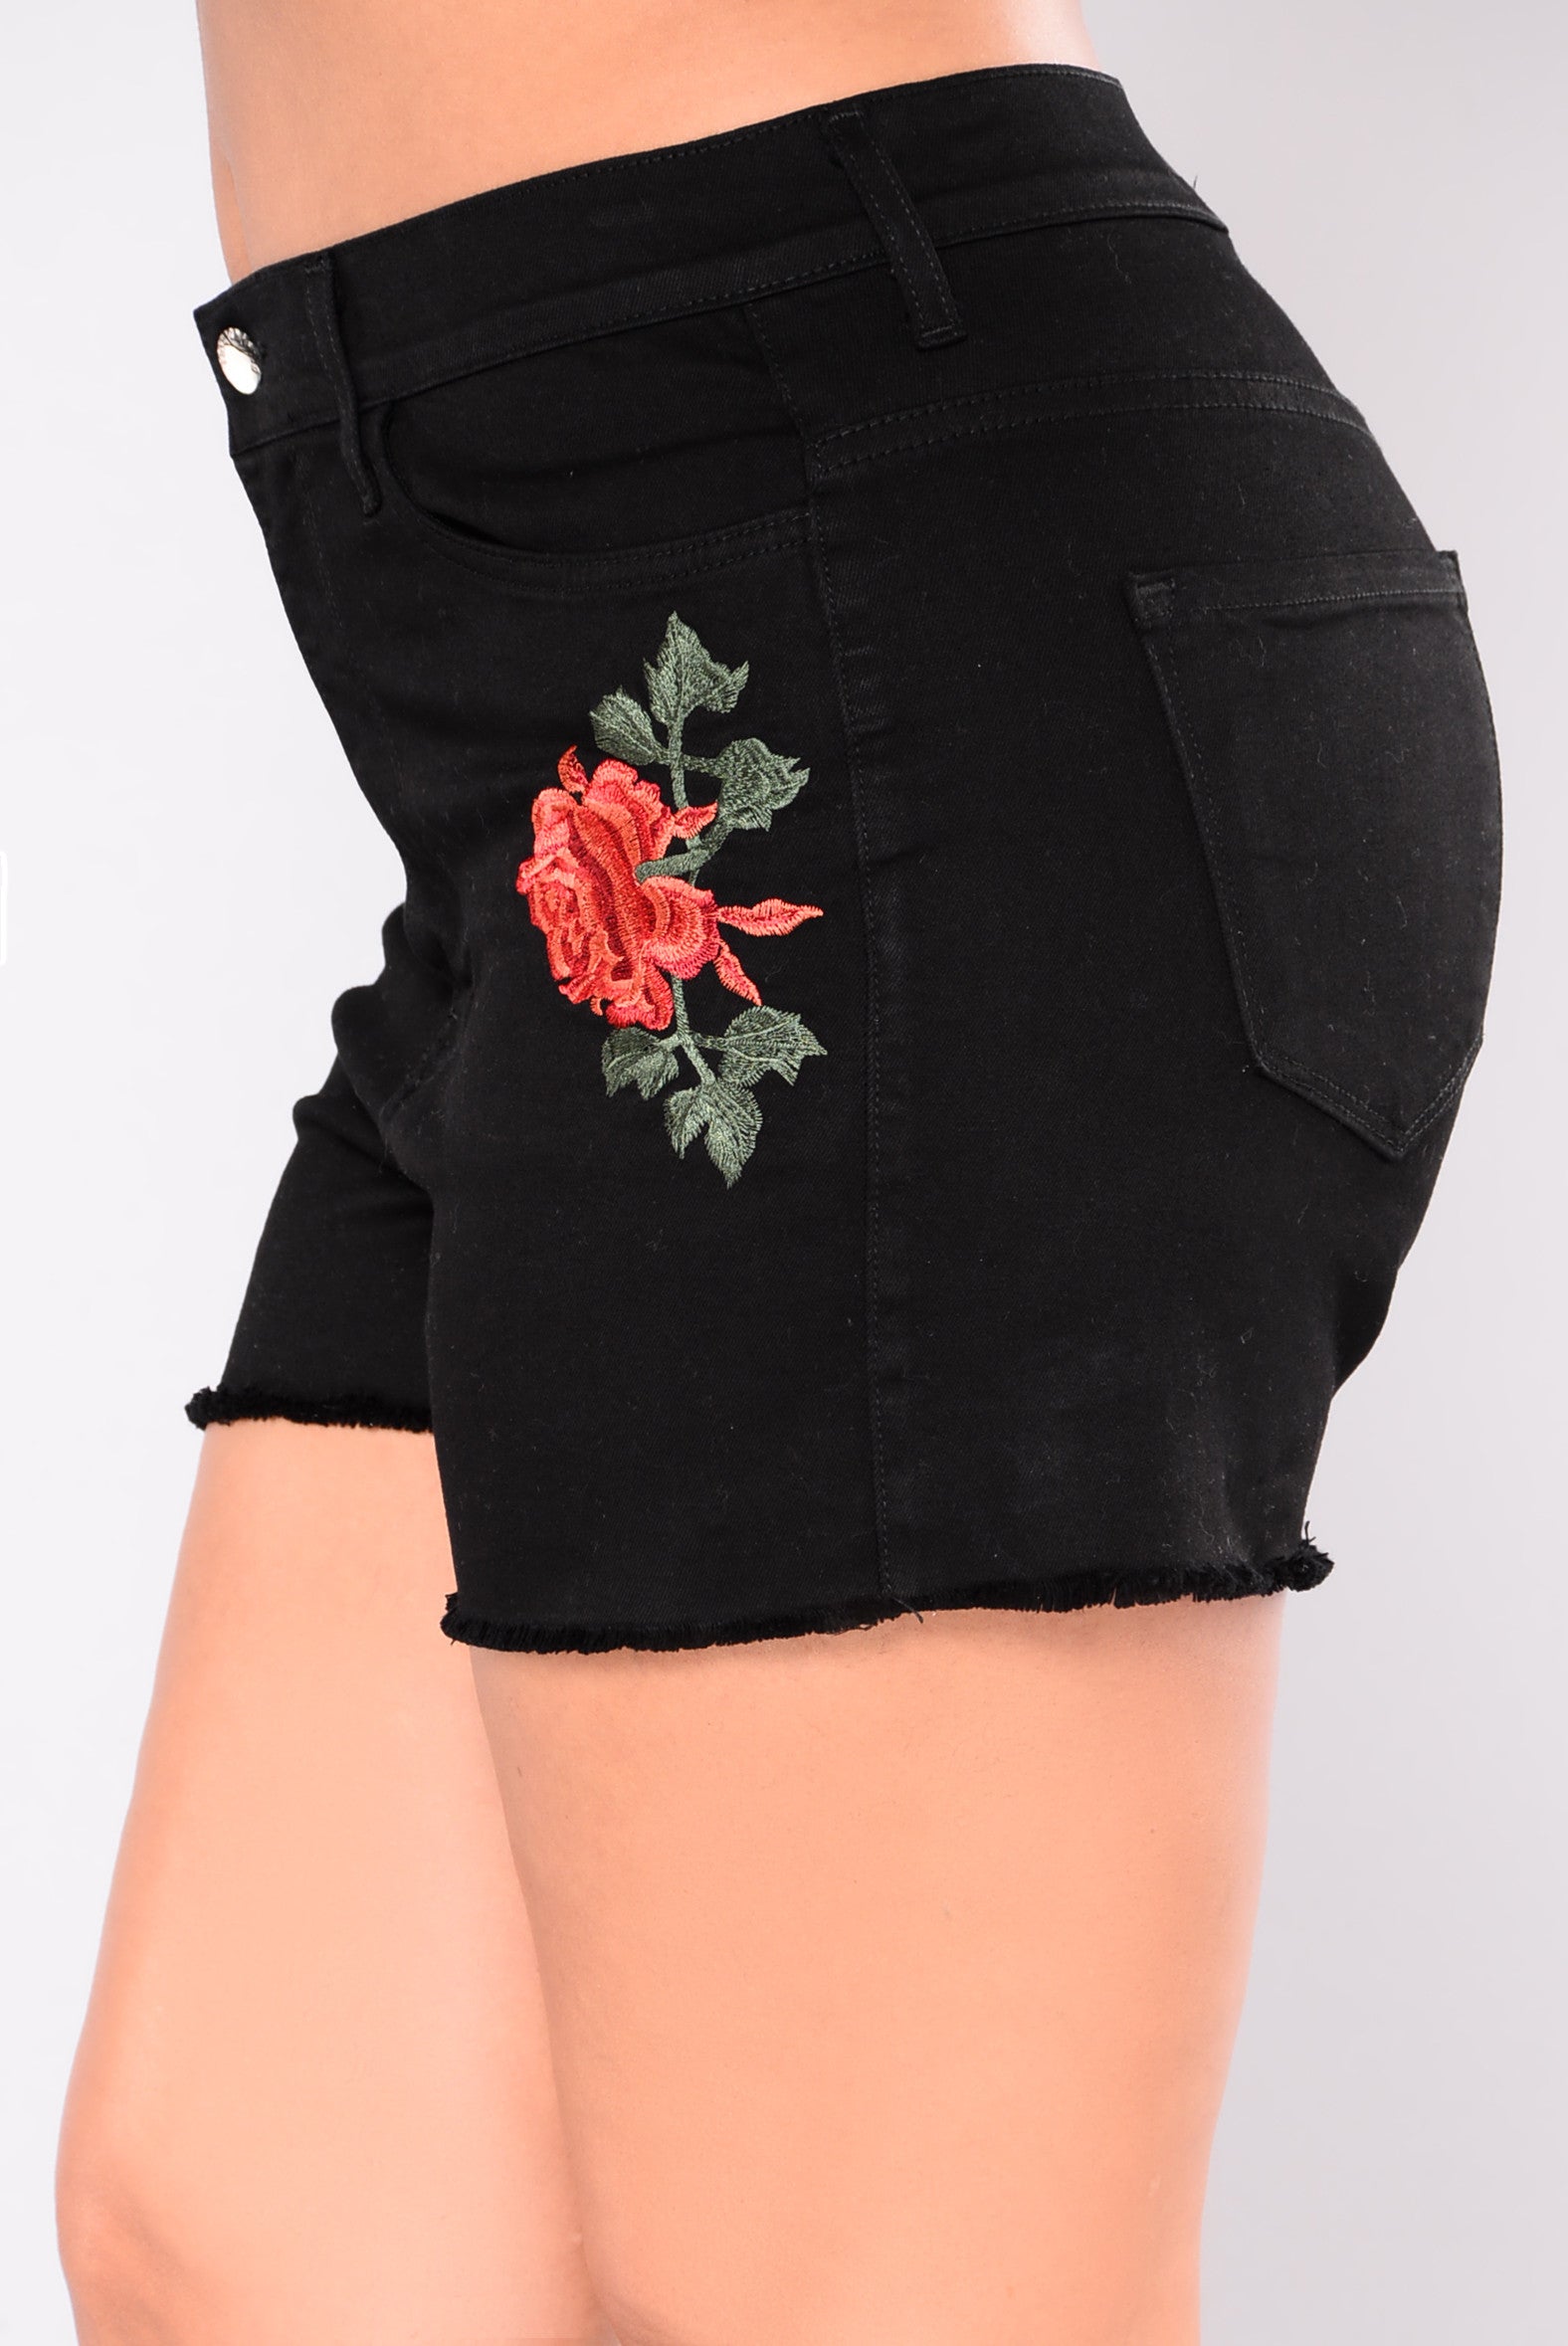 Save A Rose Denim Shorts Black